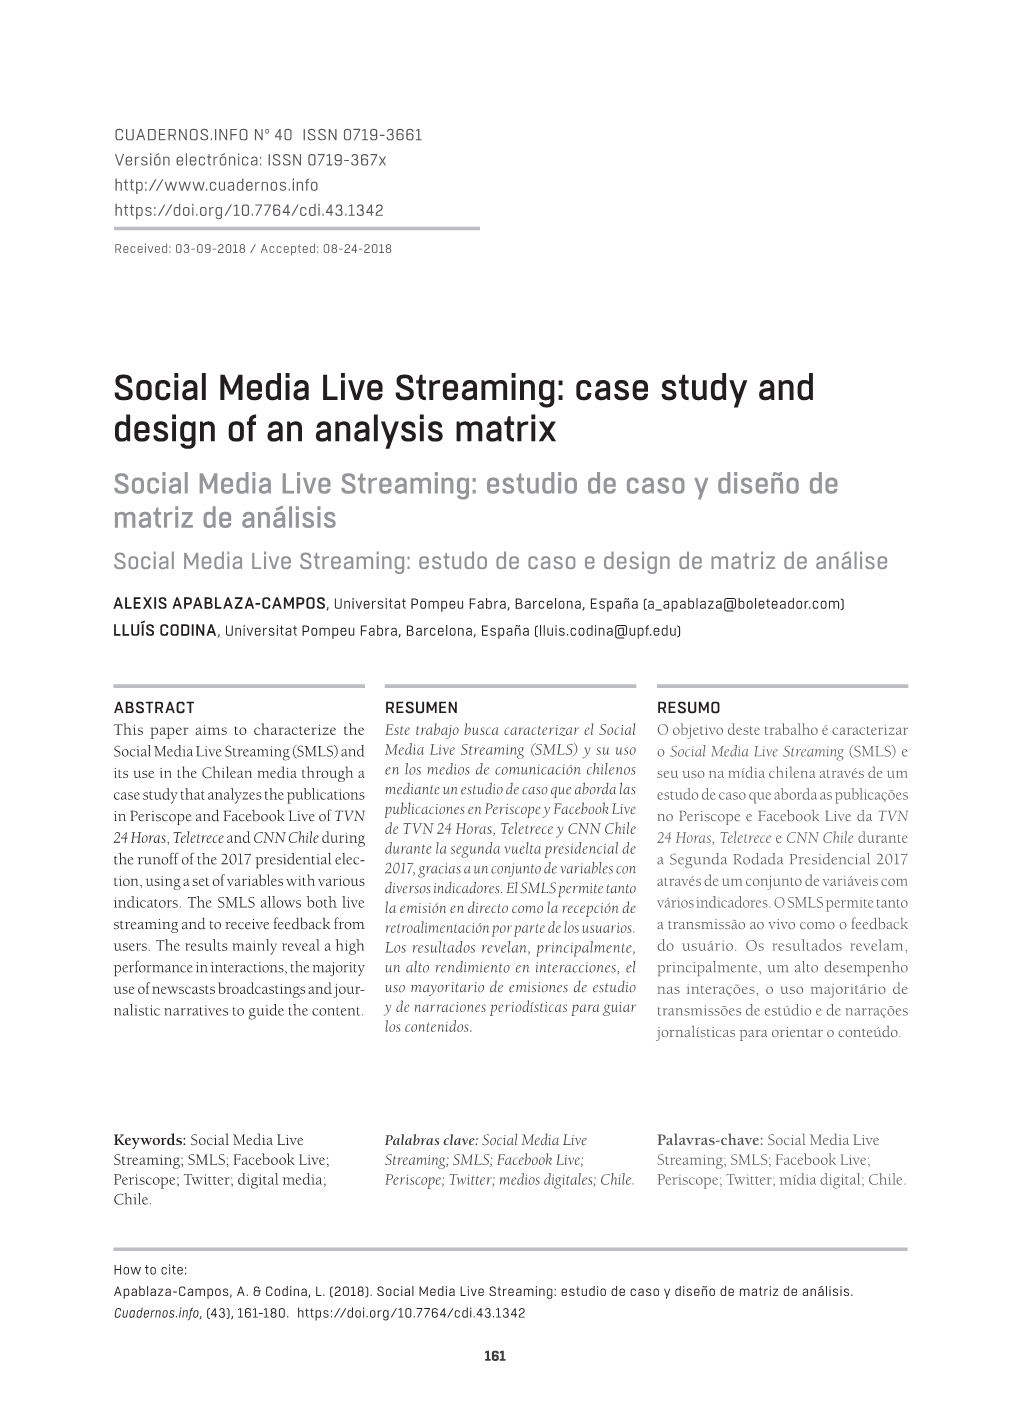 Social Media Live Streaming: Estudio De Caso Y Diseño De Matriz De Análisis Social Media Live Streaming: Estudo De Caso E Design De Matriz De Análise